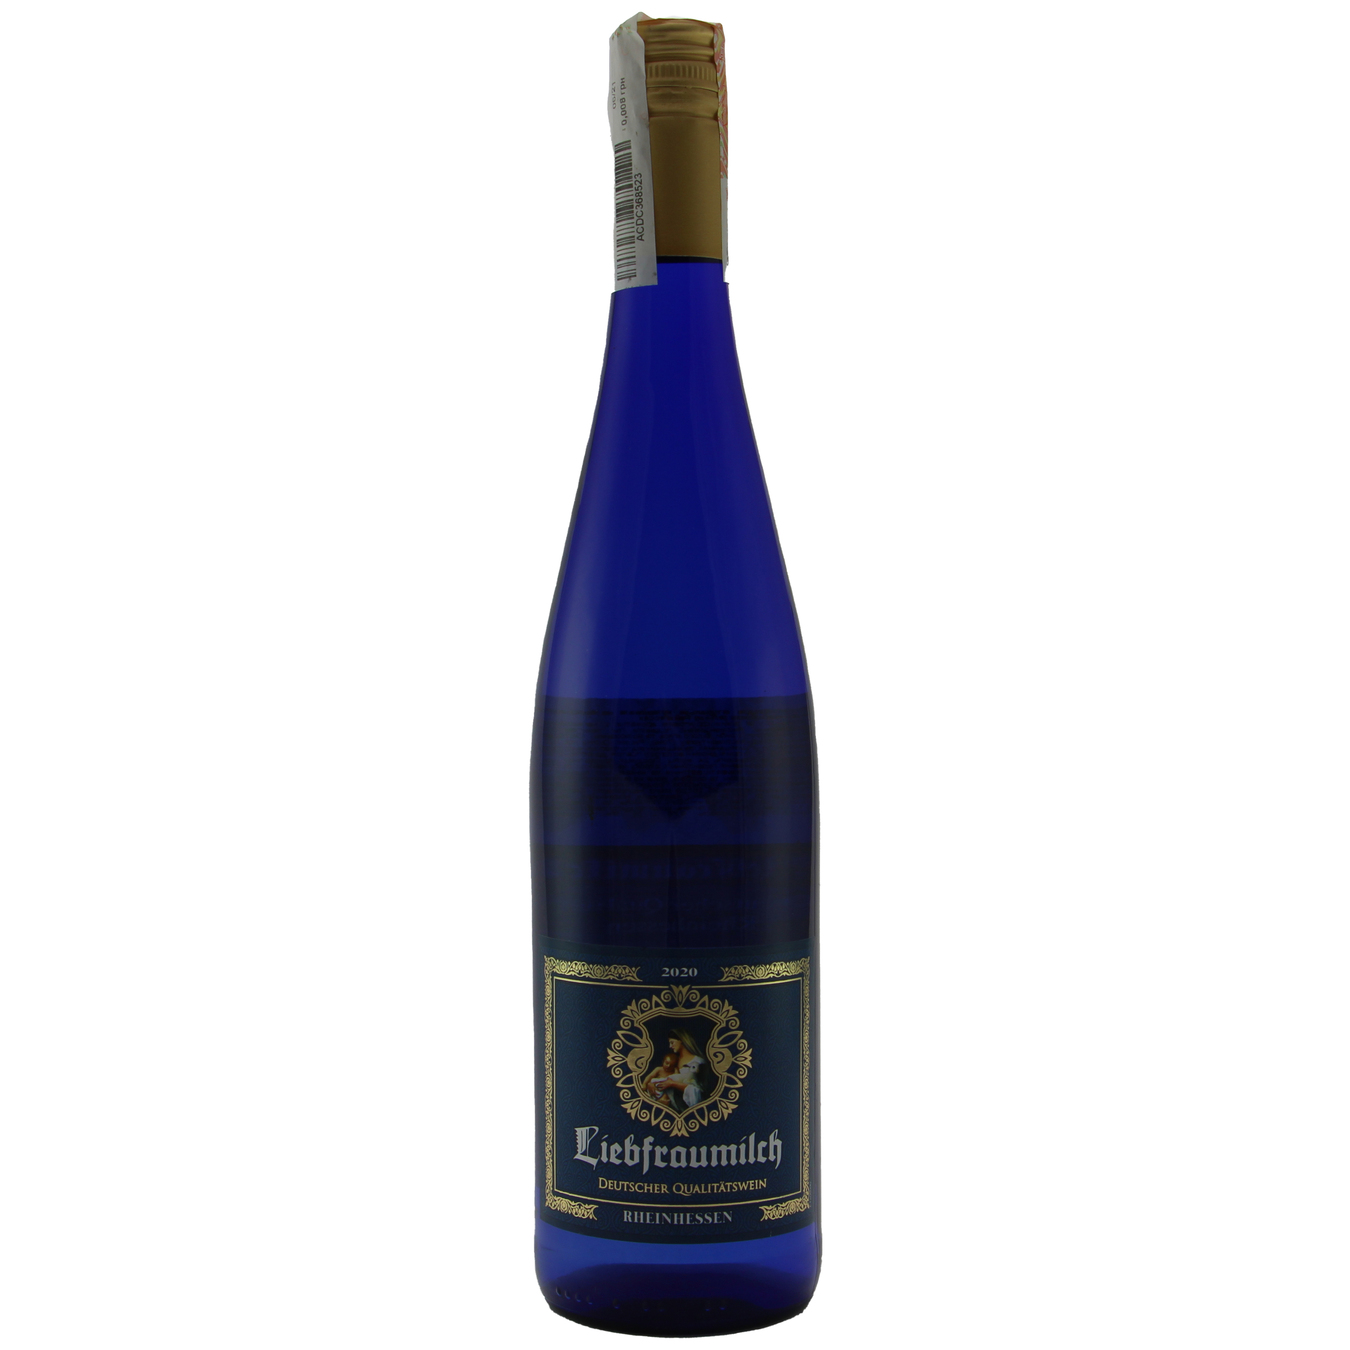 St.Ursula Liebfraumilch Rheinhessen white semisweet wine 9,5% 0,75l